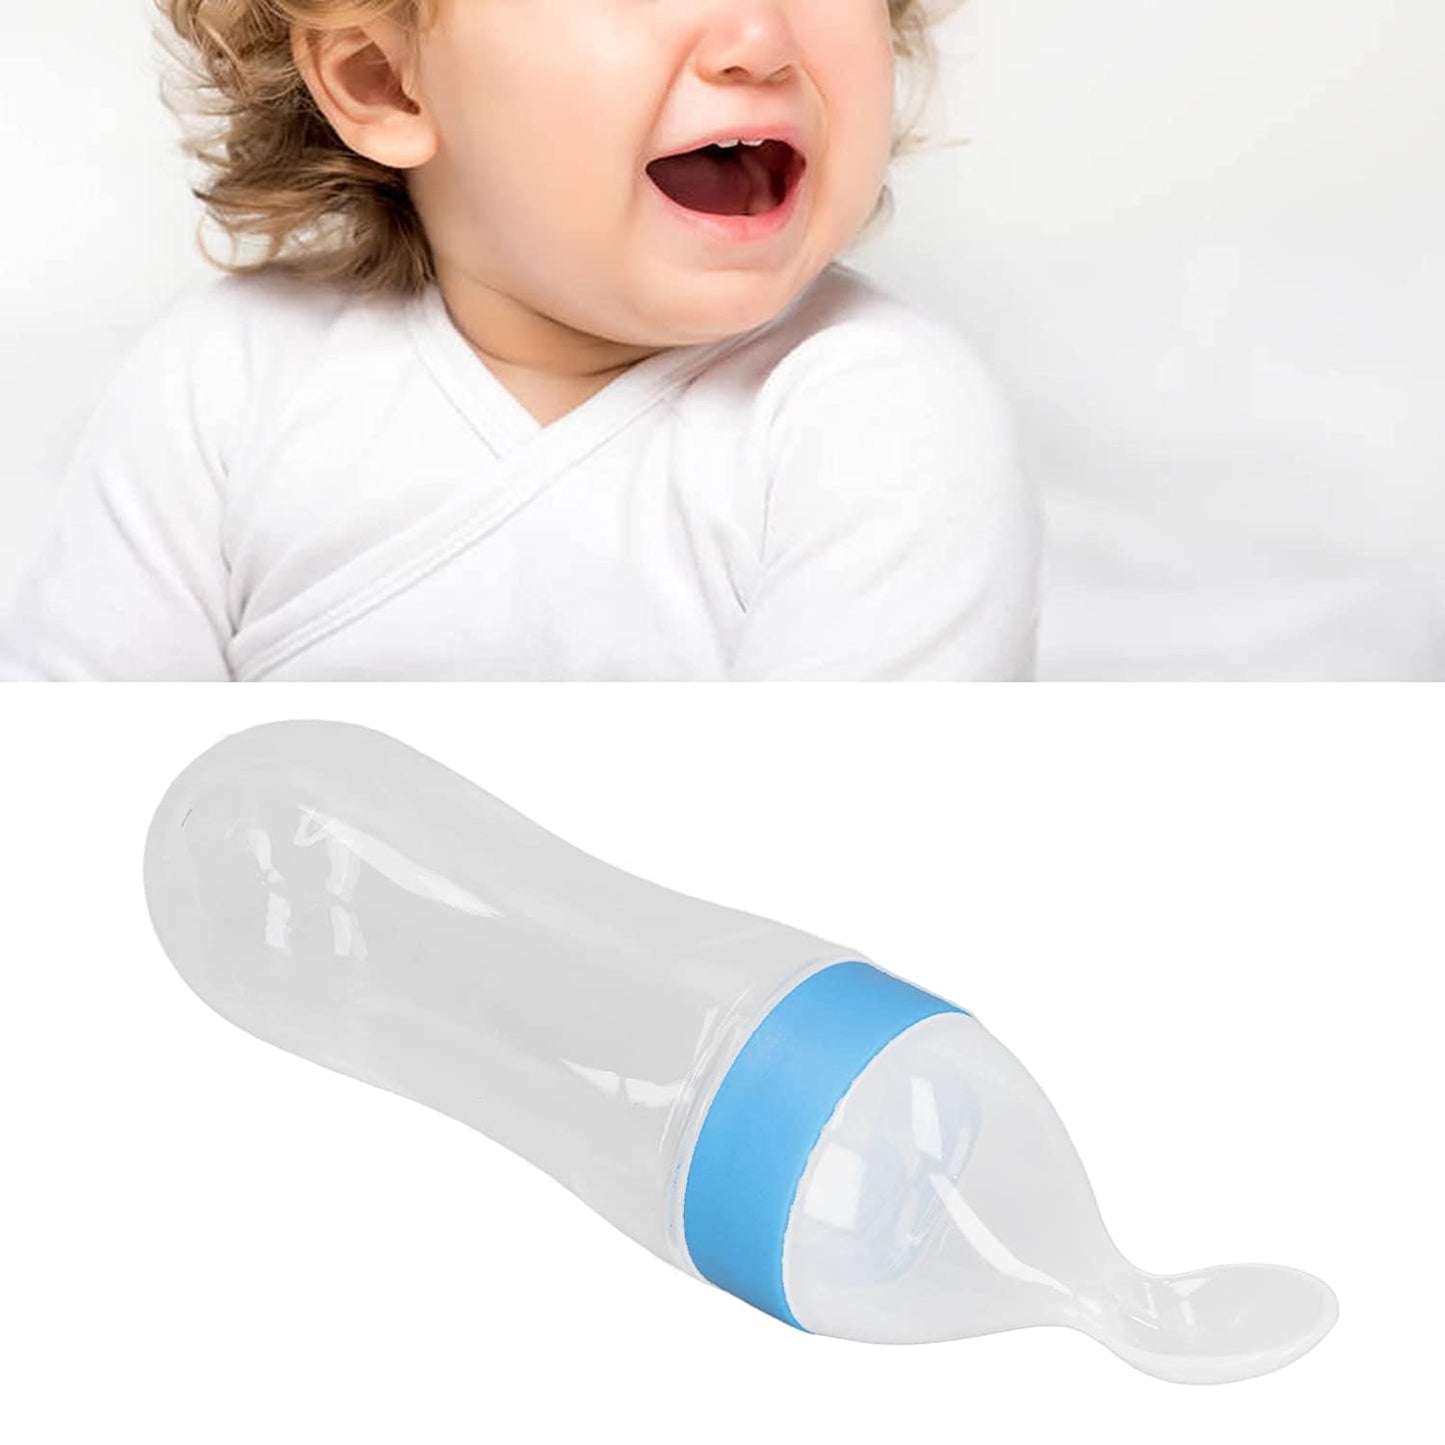 Baby Bottle Spoon, Feeding Spoon